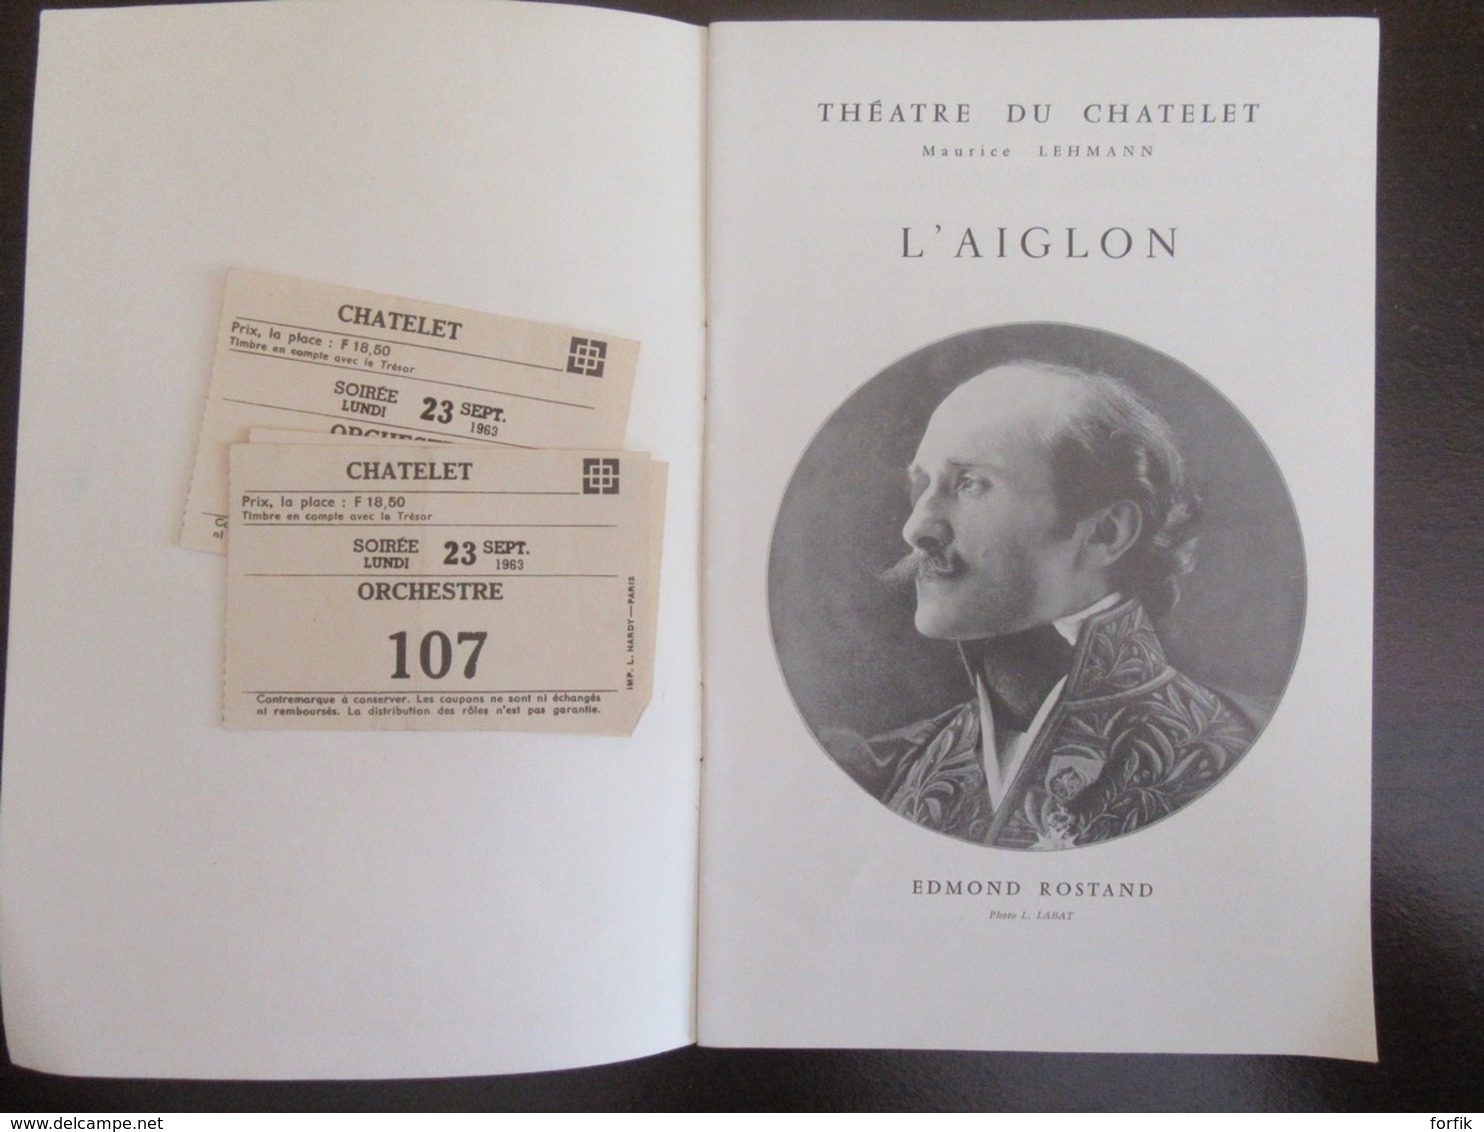 Lot de 12 programmes anciens illustrés du Théâtre du Châtelet - Bel ensemble